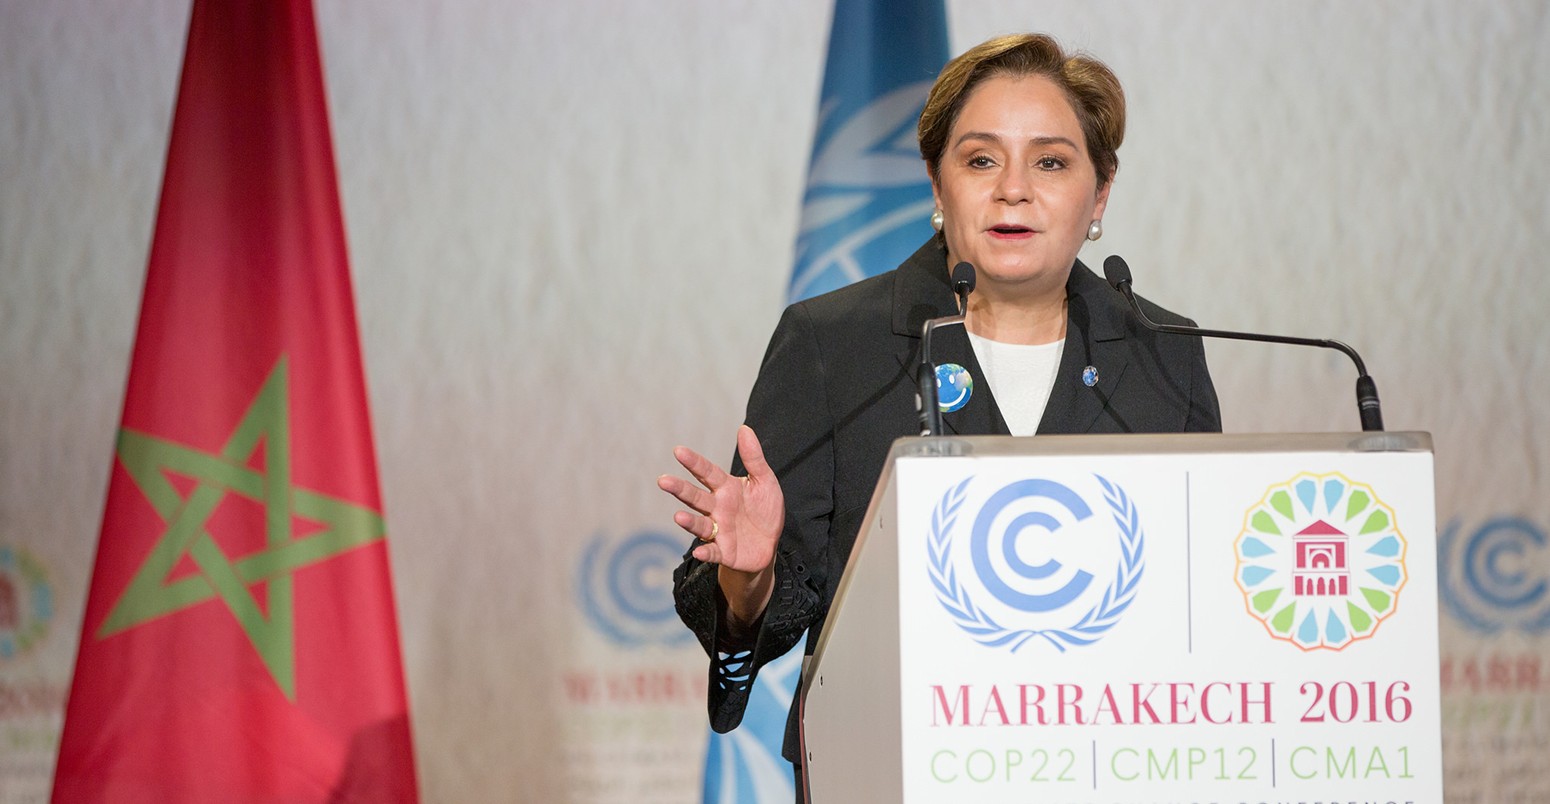 联合国气候变化框架公约执行秘书帕特里夏Espinosa at COP22 in Marrakech